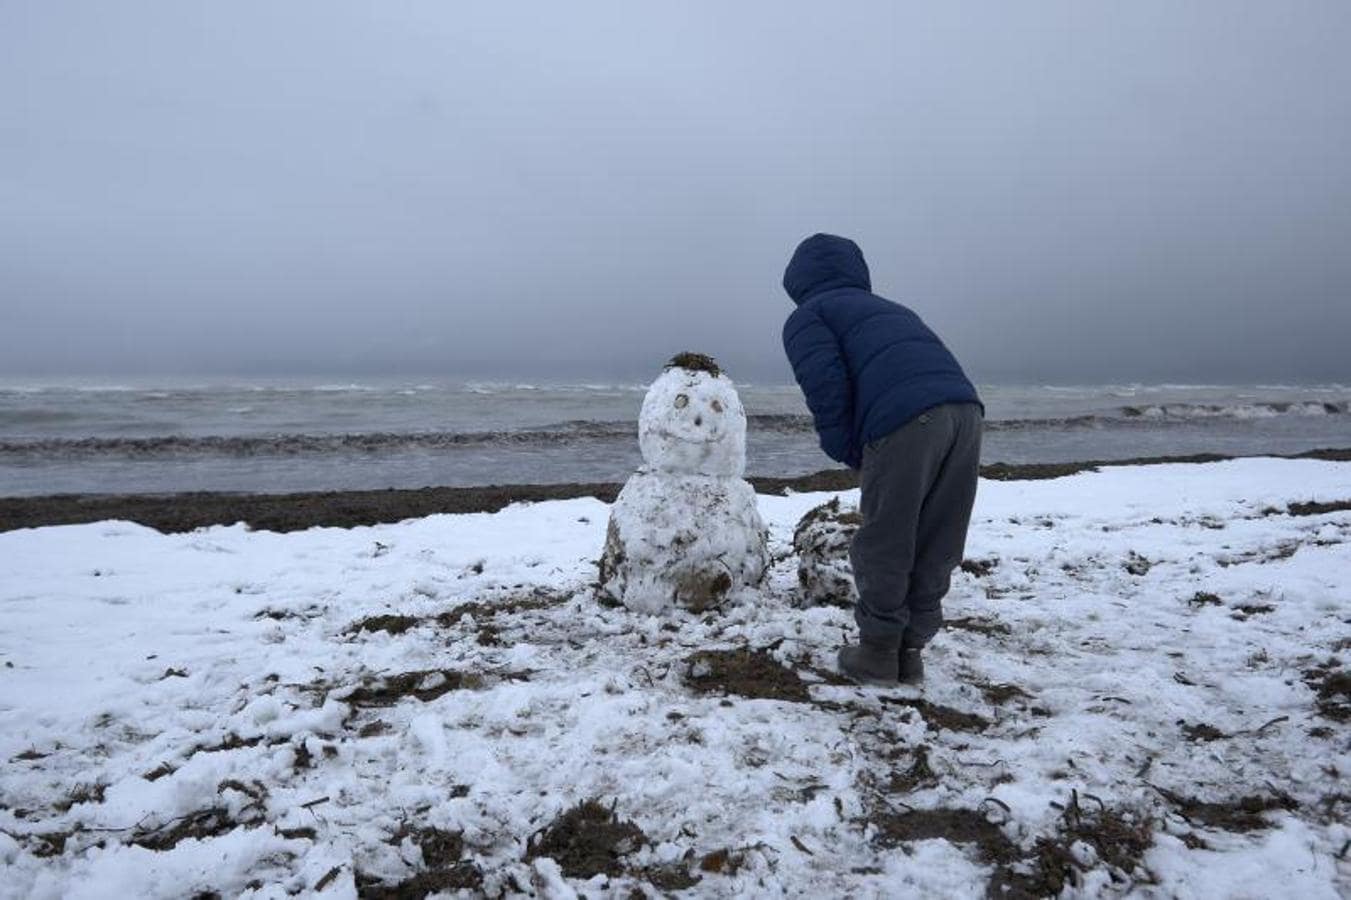 La ola de frío deja estampas insólitas, como la de este niño haciendo un muñeco de nieve en la playa de Denia